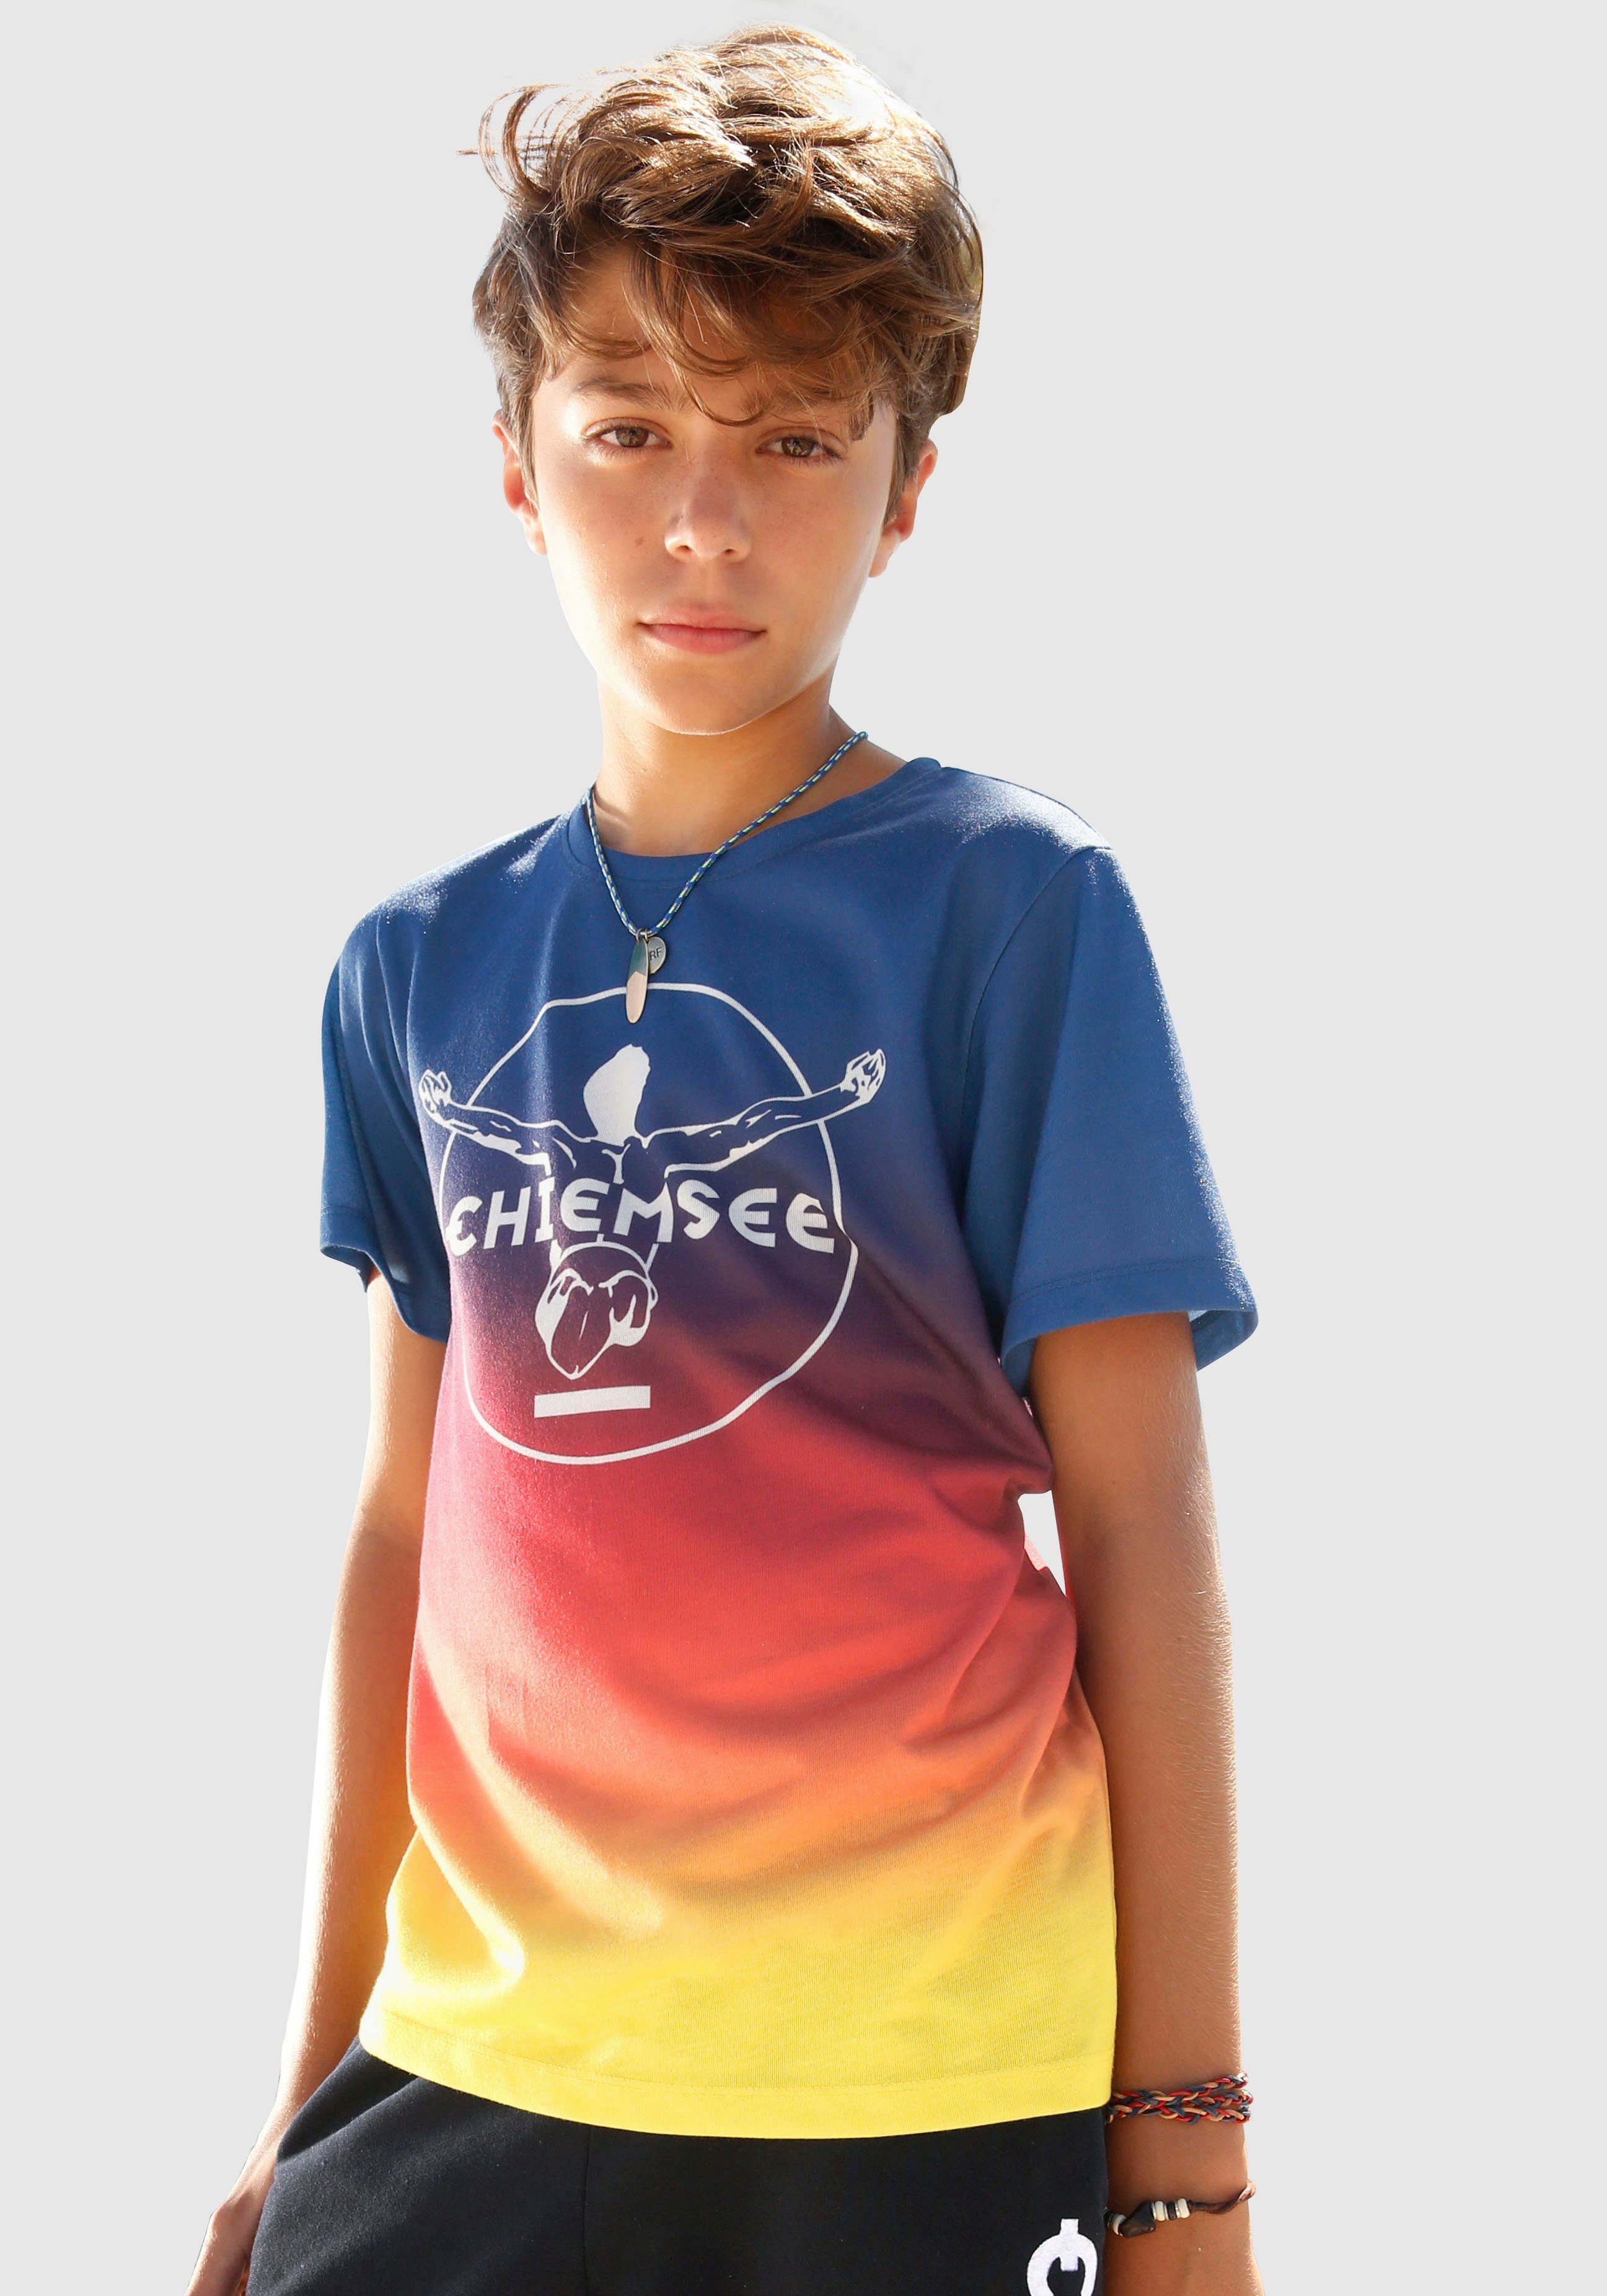 Chiemsee T-Shirt im Farbverlauf mit Druck vorn | OTTO